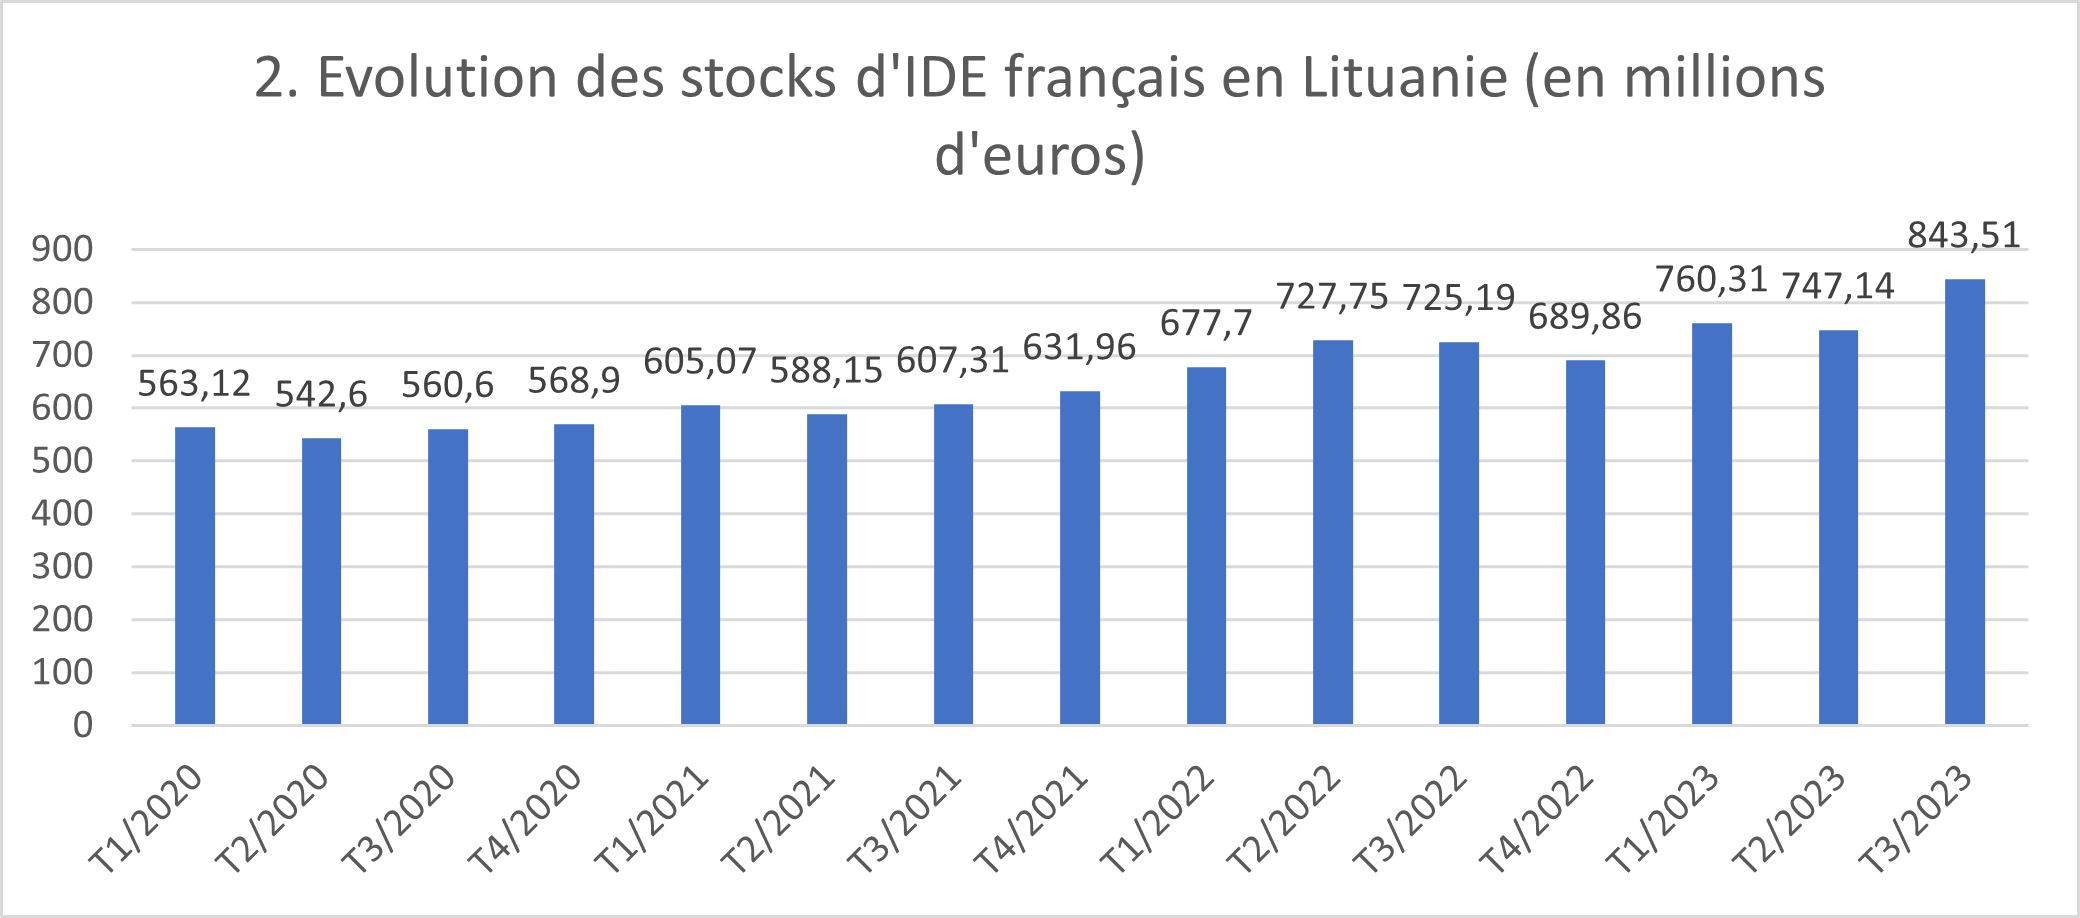 2. Evolution des stocks d'IDE français en Lituanie (en millions d'euros)